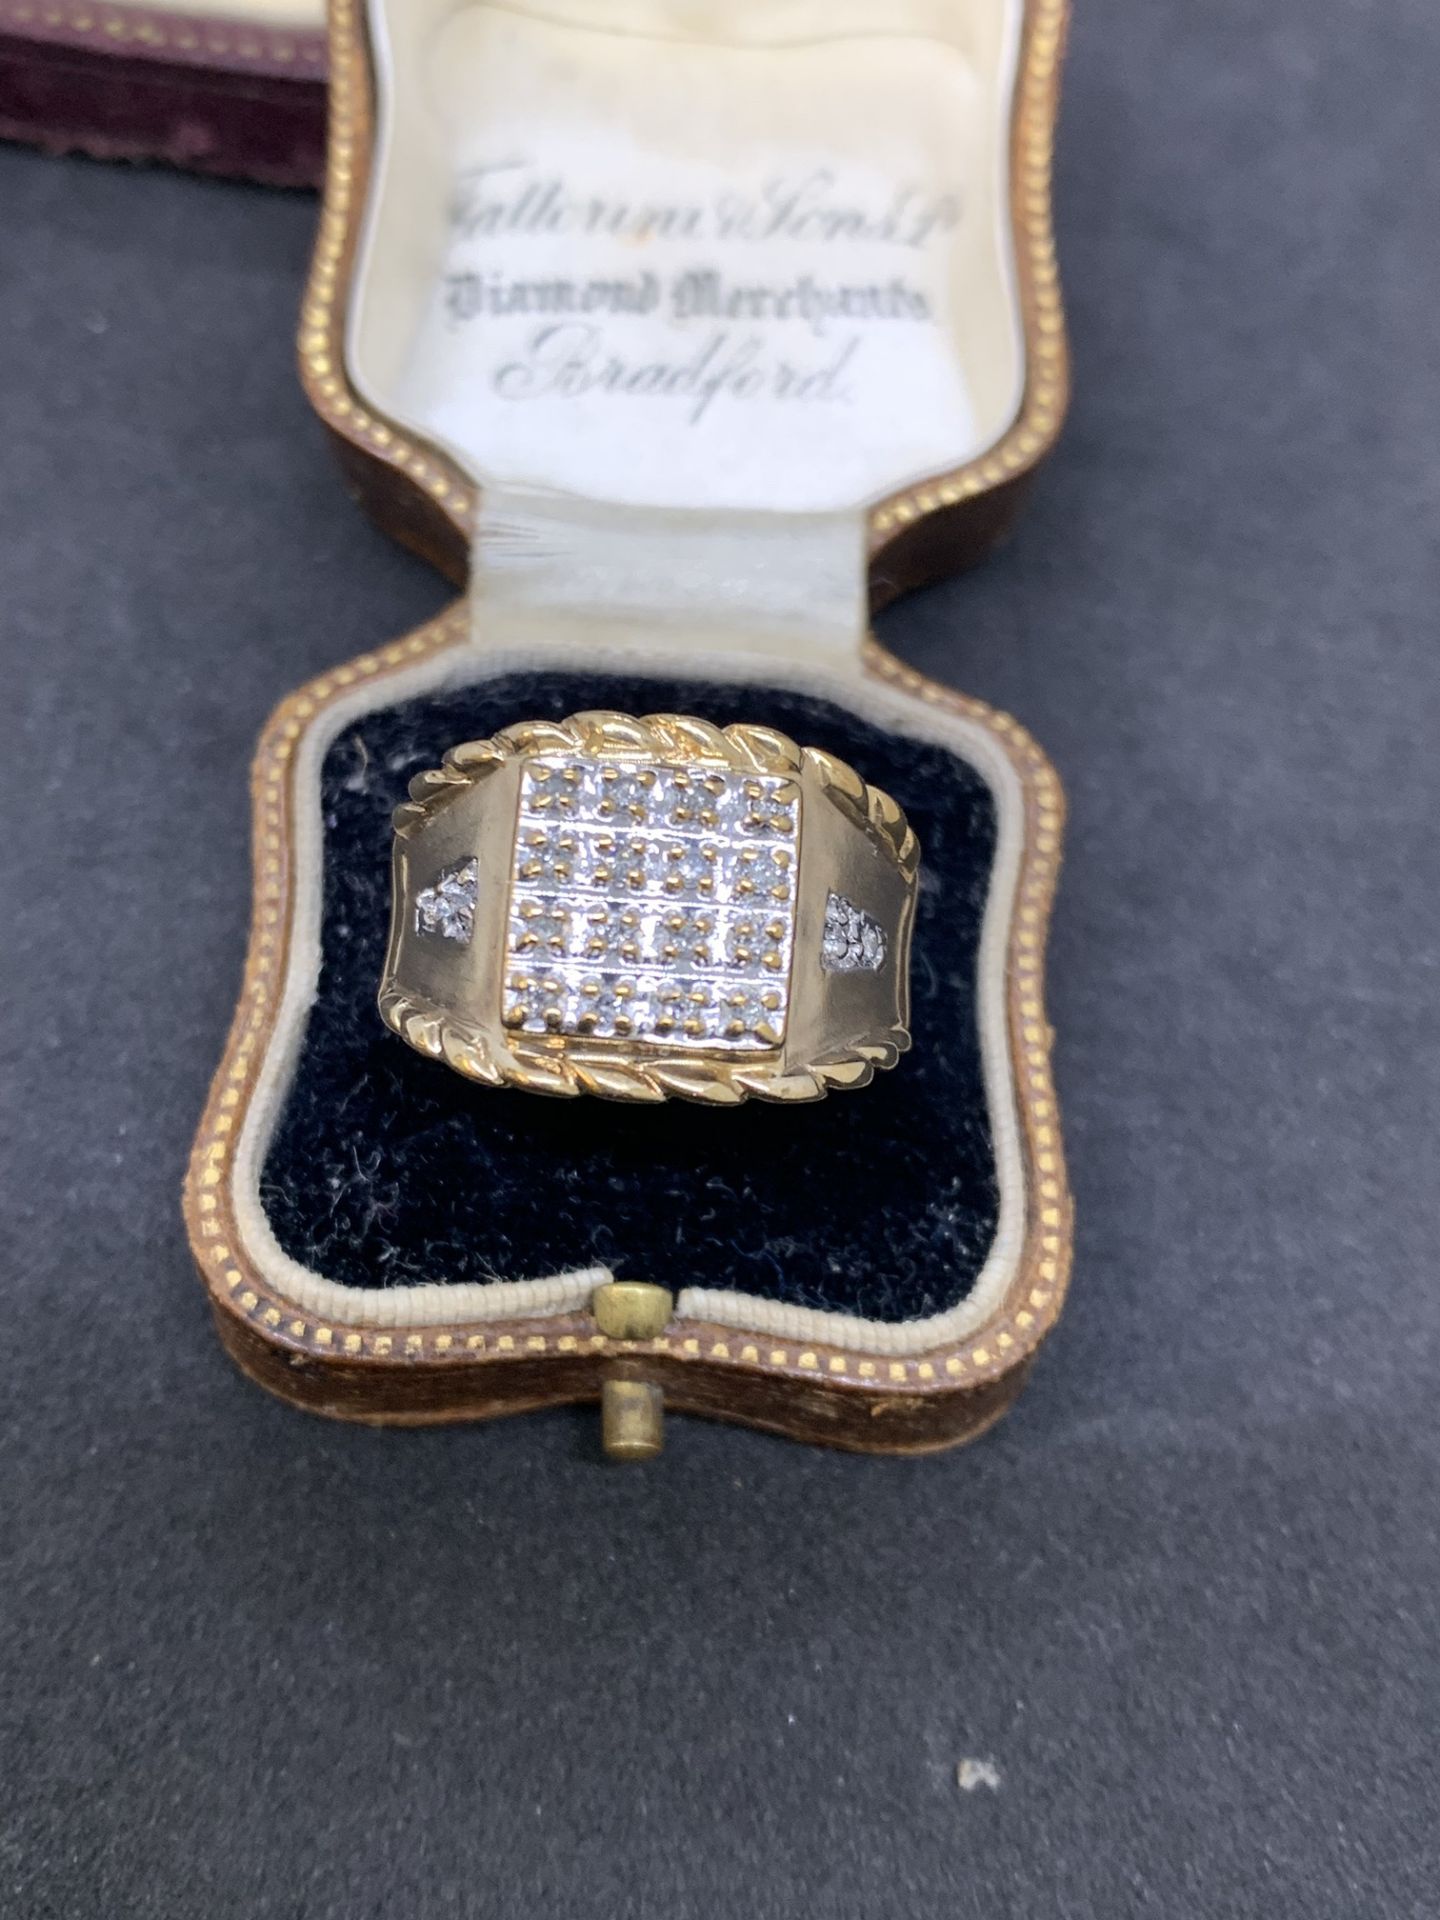 10ct gold diamond set Men's ring - Image 2 of 4